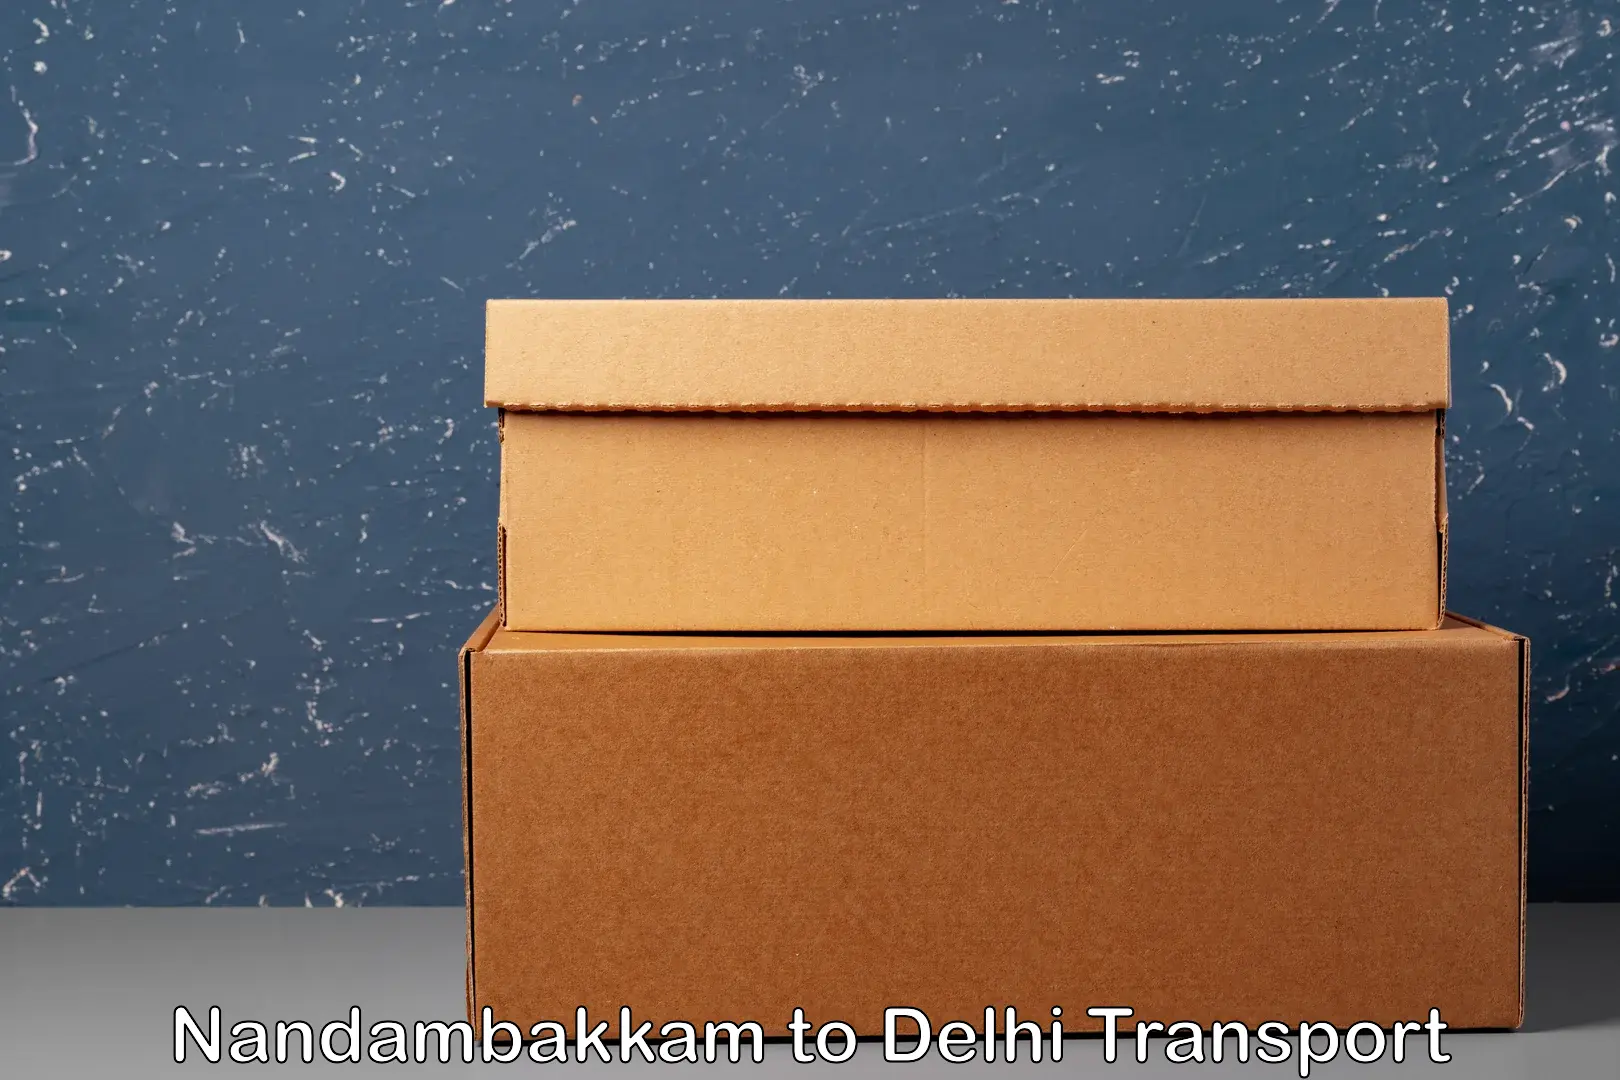 India truck logistics services Nandambakkam to Delhi